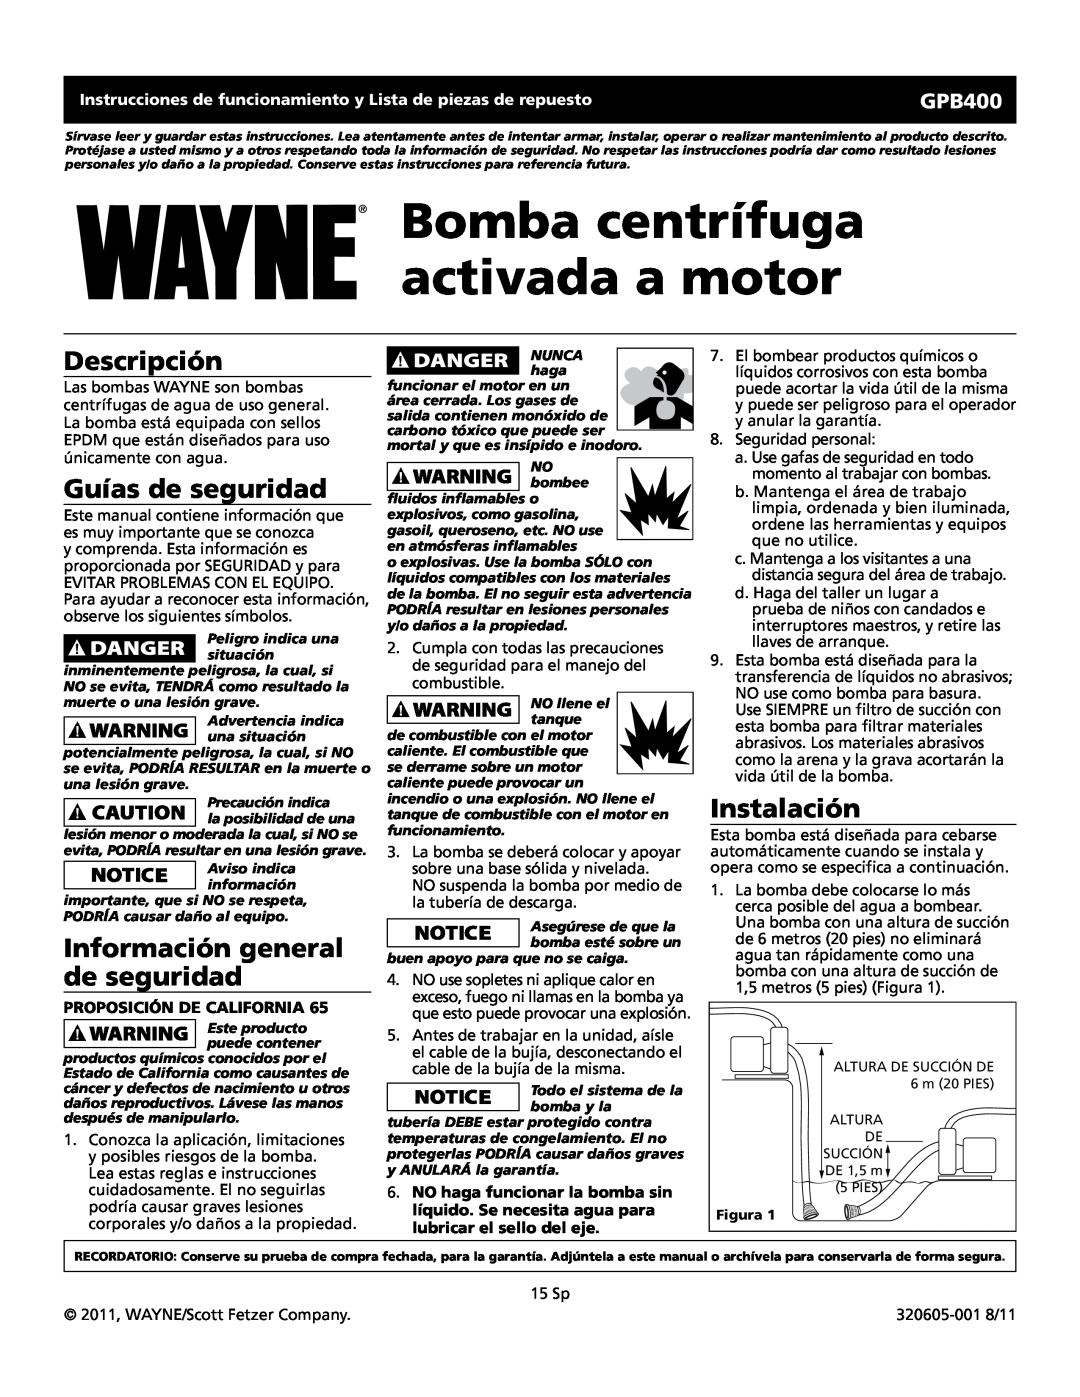 Wayne GPB400 warranty Bomba centrífuga activada a motor, Descripción, Guías de seguridad, Información general de seguridad 